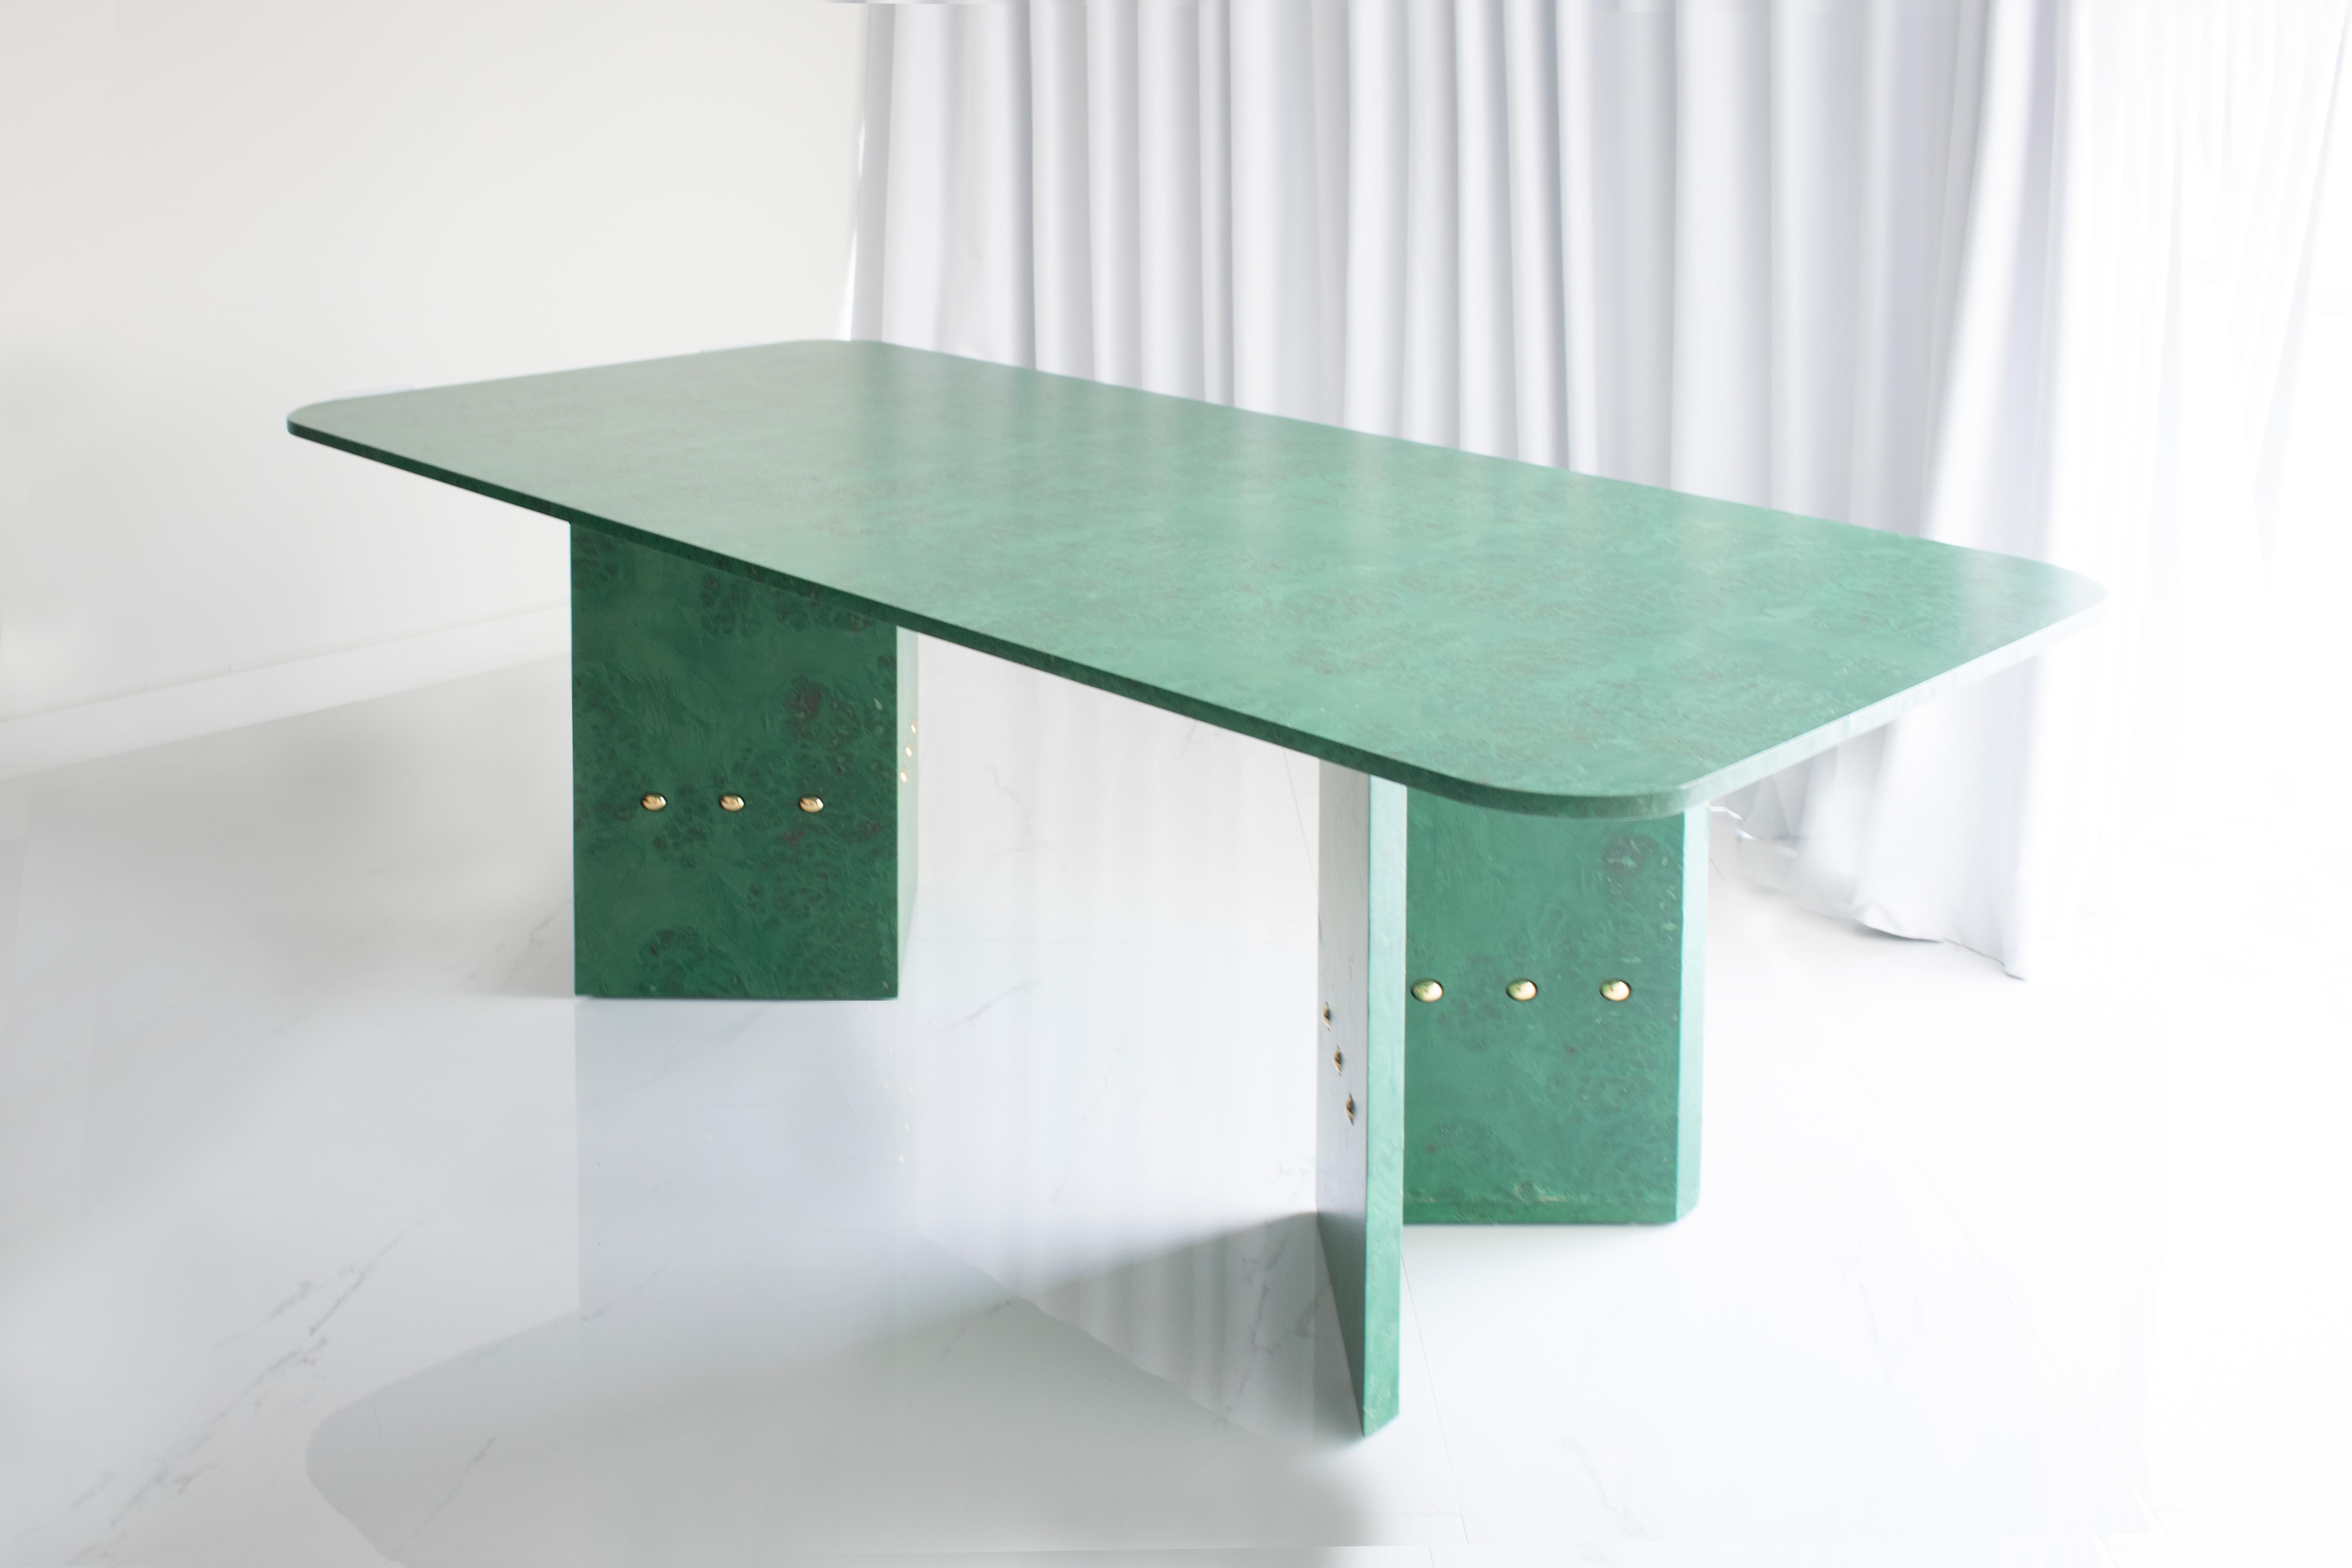 Fabriqué en placage de bois de ronce laqué en vert, avec des détails en laiton massif, ce meuble de salle à manger est une déclaration chromatique audacieuse conçue avec des détails fins. Son design intemporel apporte un morceau de nature à l'espace